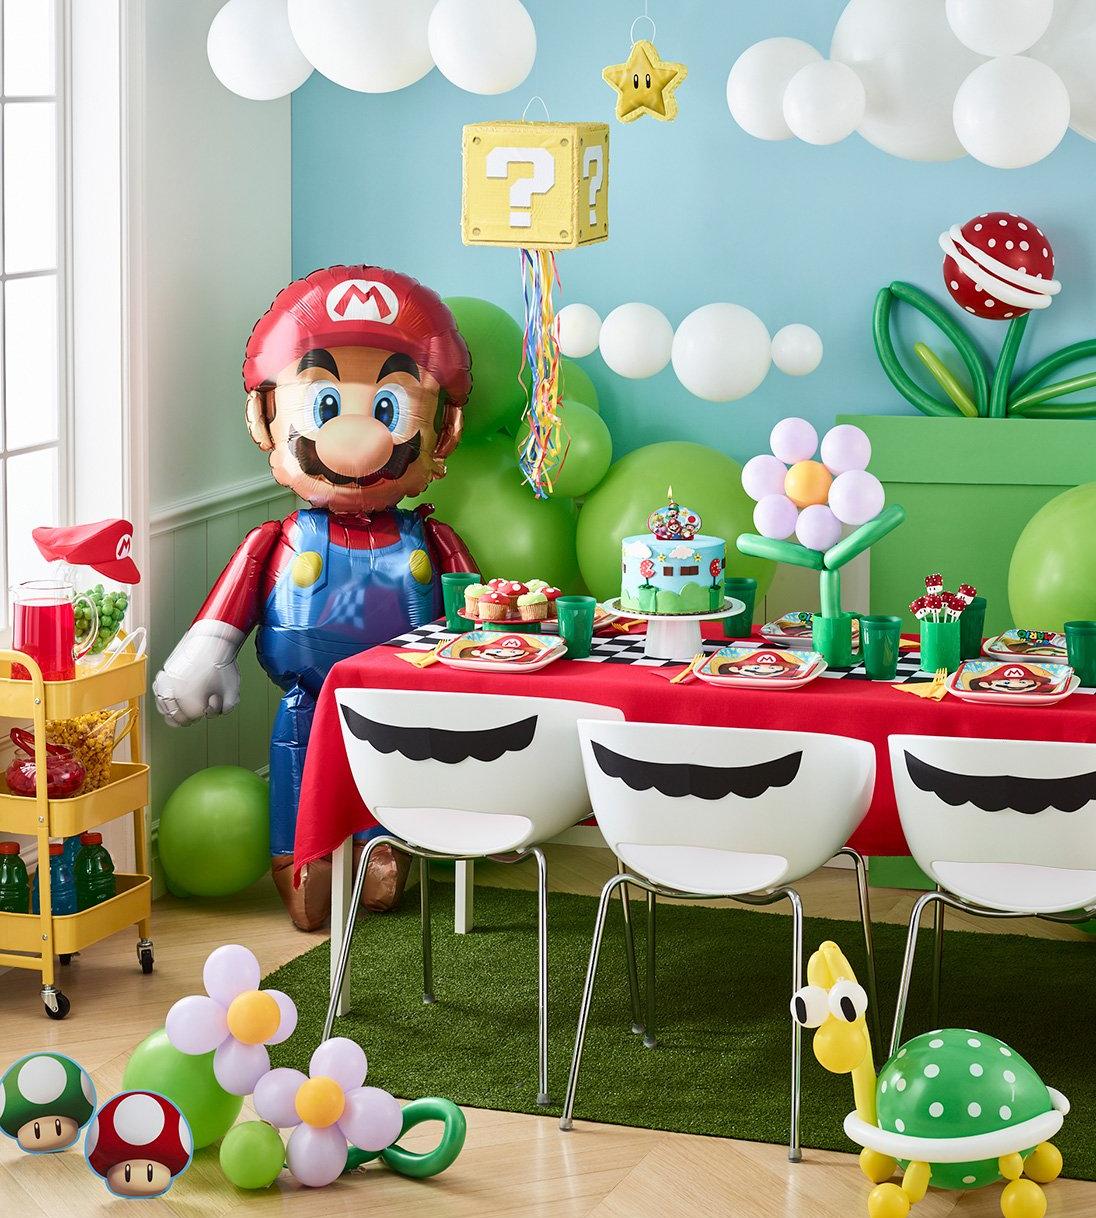 Super Mario Brothers Piñata, Mario Birthday -   Super mario bros  birthday party, Super mario birthday party, Mario bros birthday party ideas